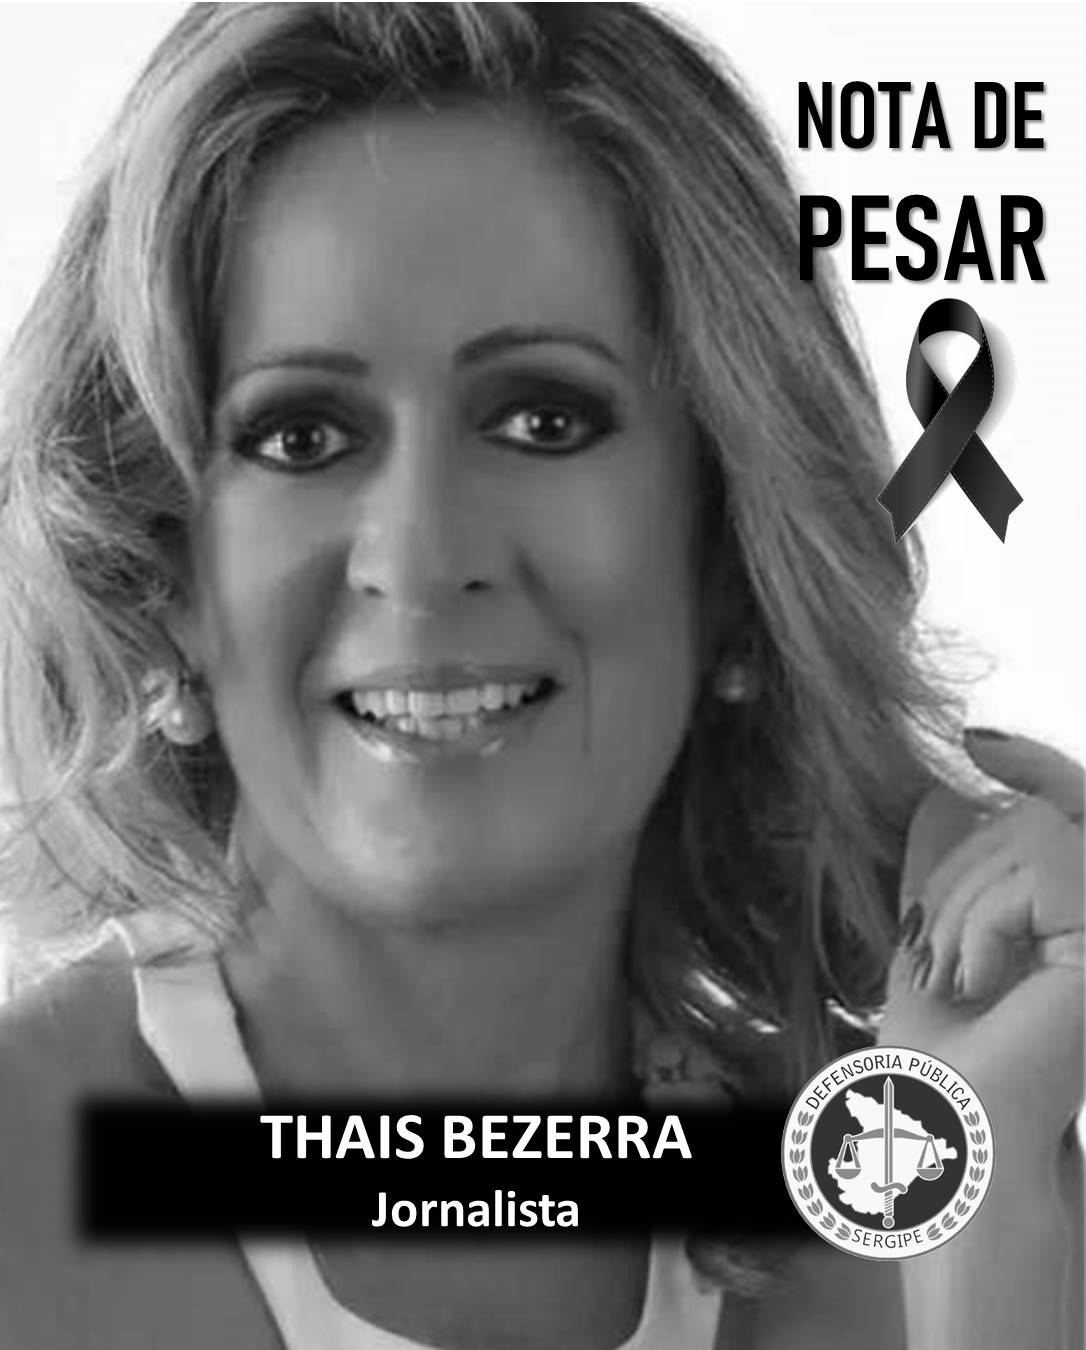 Defensoria Pública manifesta Pesar pelo passamento da jornalista Thaís Bezerra